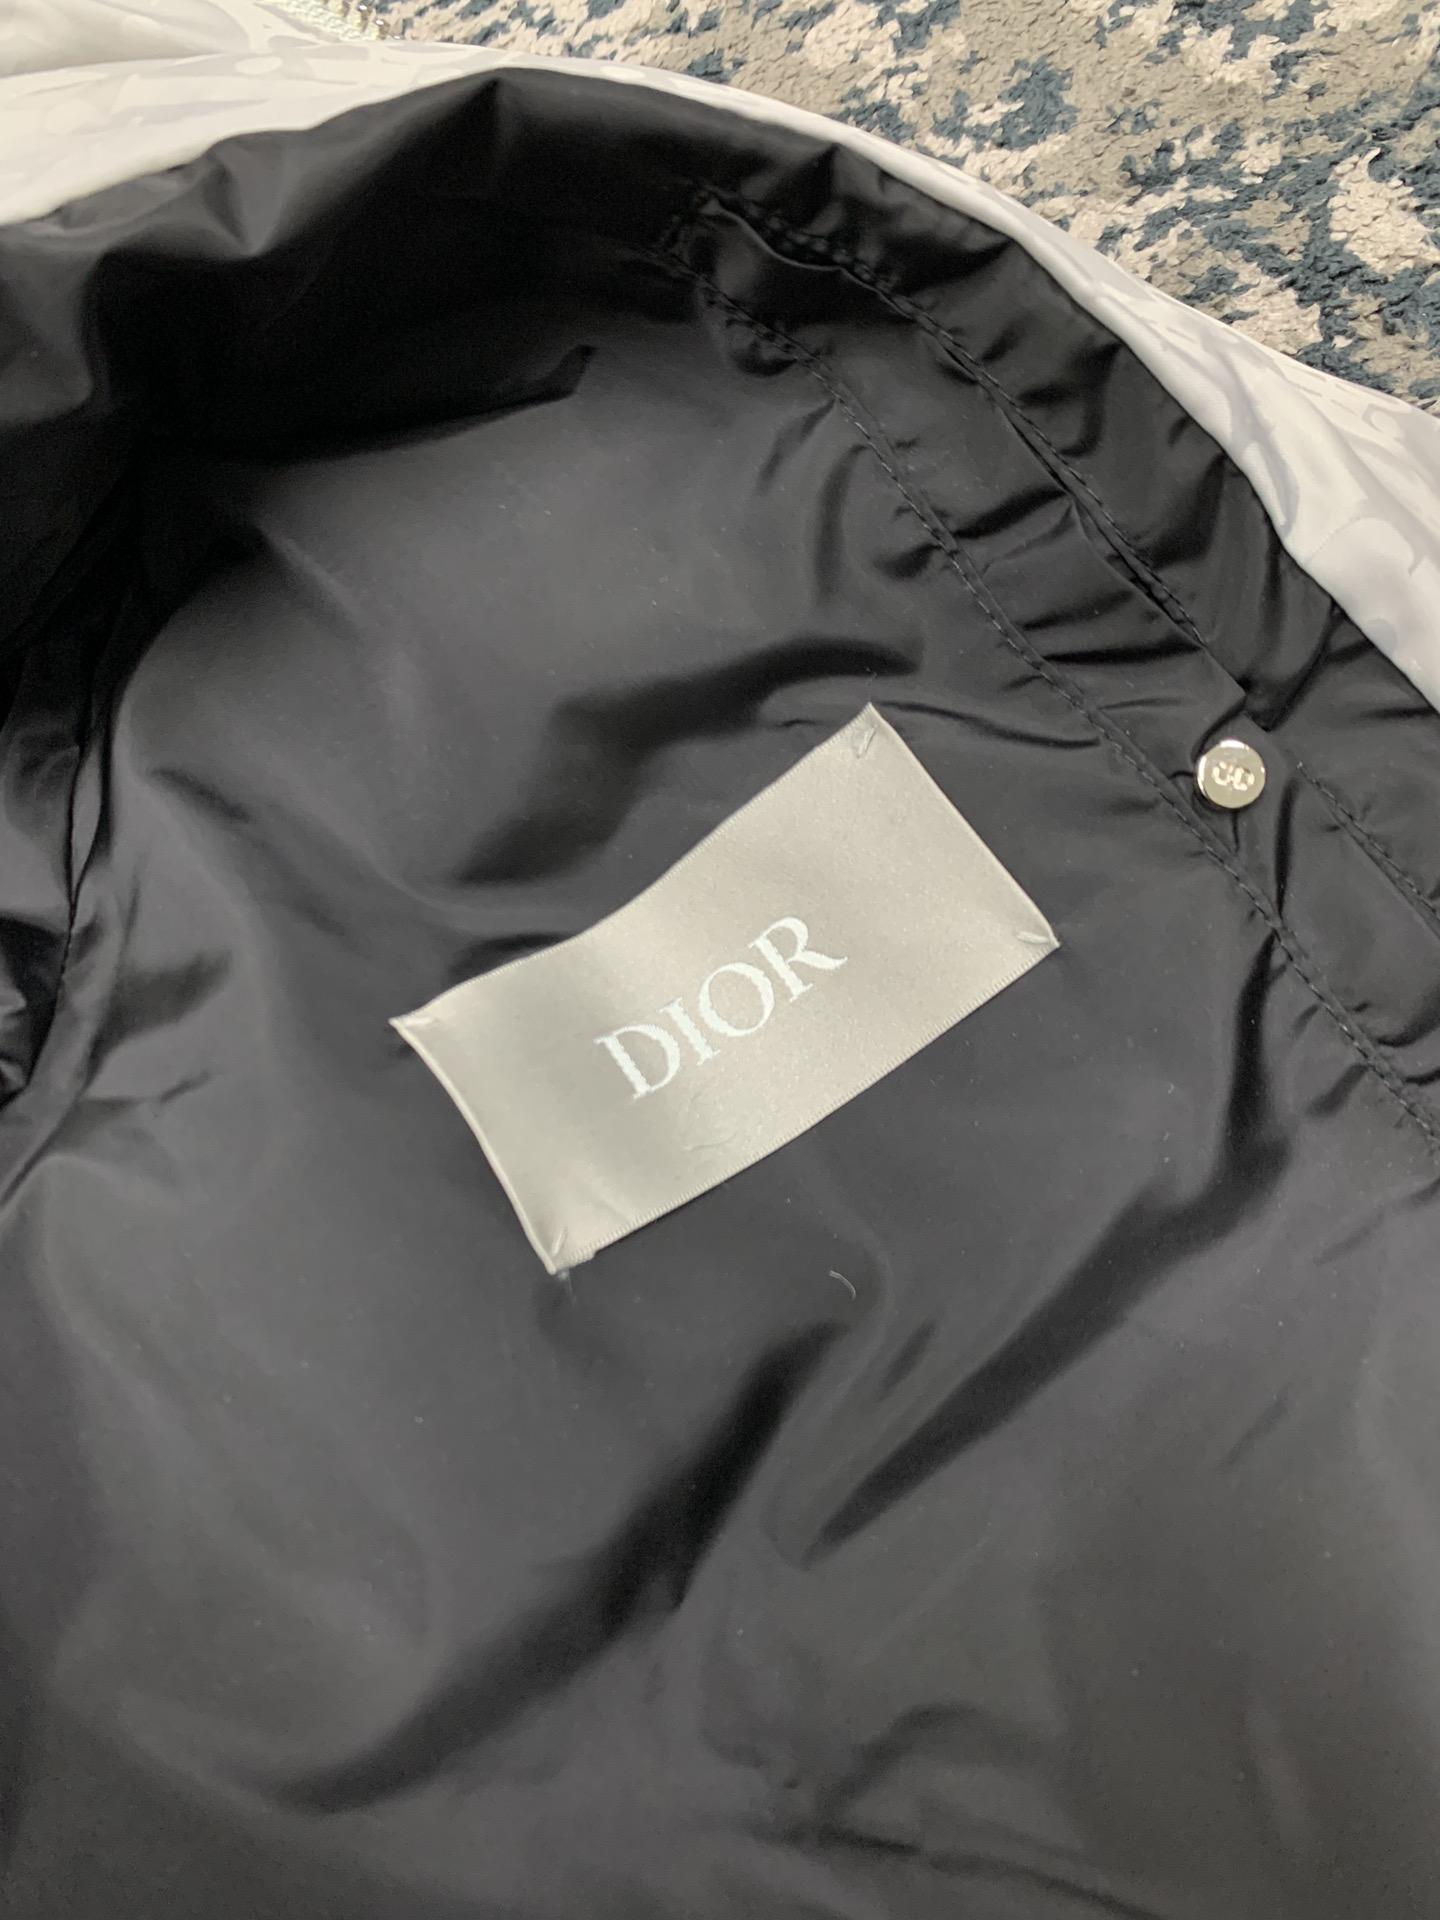 dior-oblique-down-jacket-5802_16844019028-1000